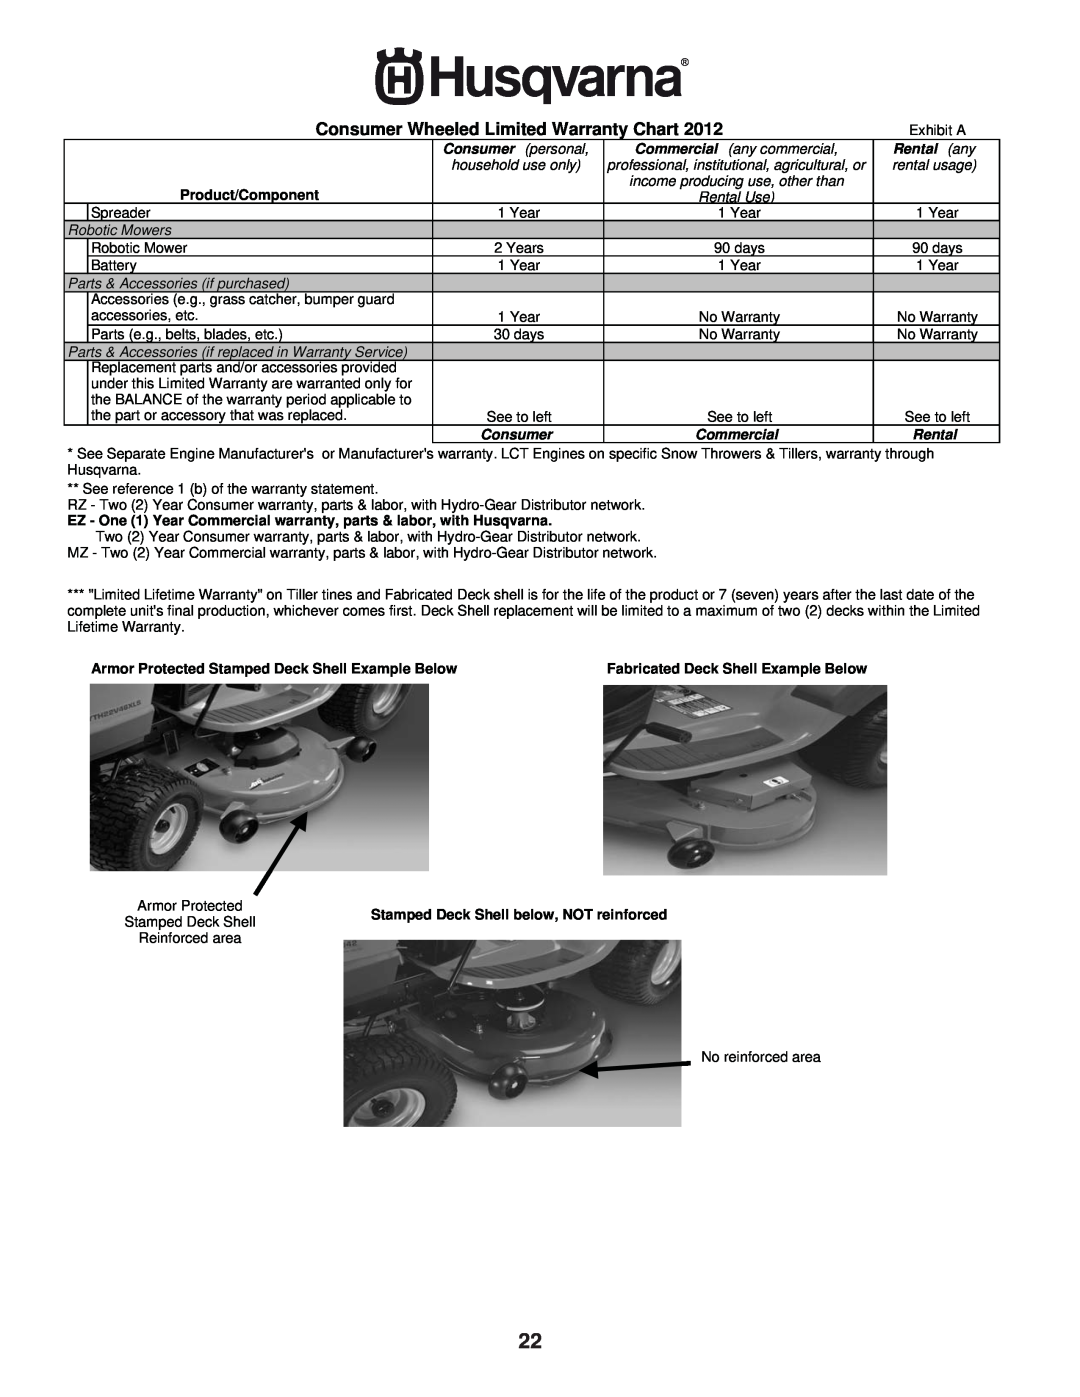 Husqvarna HU800AWD warranty Consumer Wheeled Limited Warranty Chart, Rental any, Product/Component 